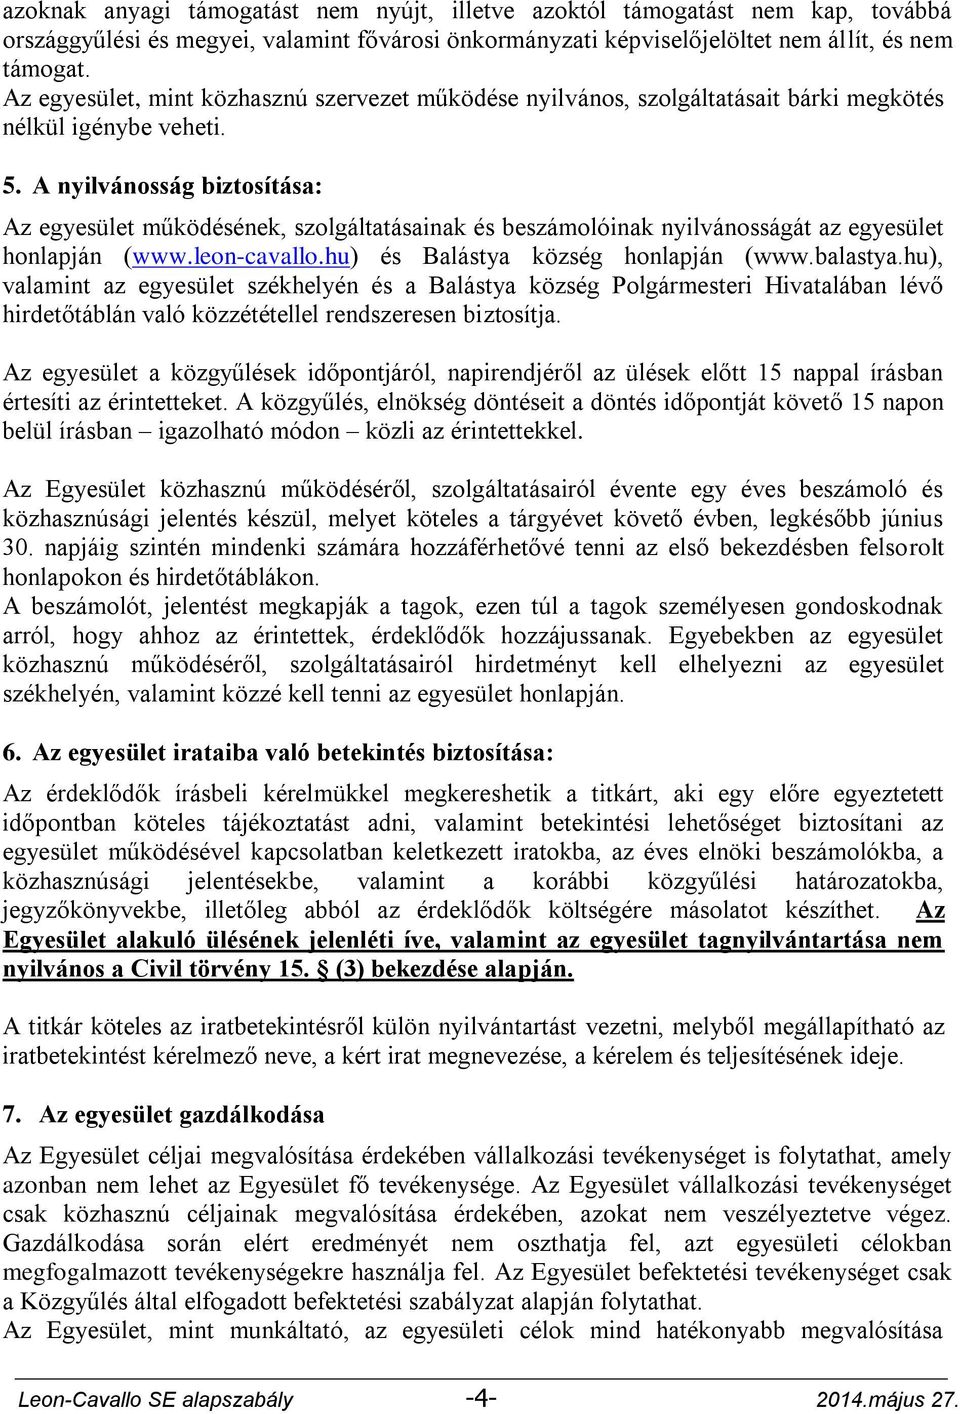 A nyilvánosság biztosítása: Az egyesület működésének, szolgáltatásainak és beszámolóinak nyilvánosságát az egyesület honlapján (www.leon-cavallo.hu) és Balástya község honlapján (www.balastya.